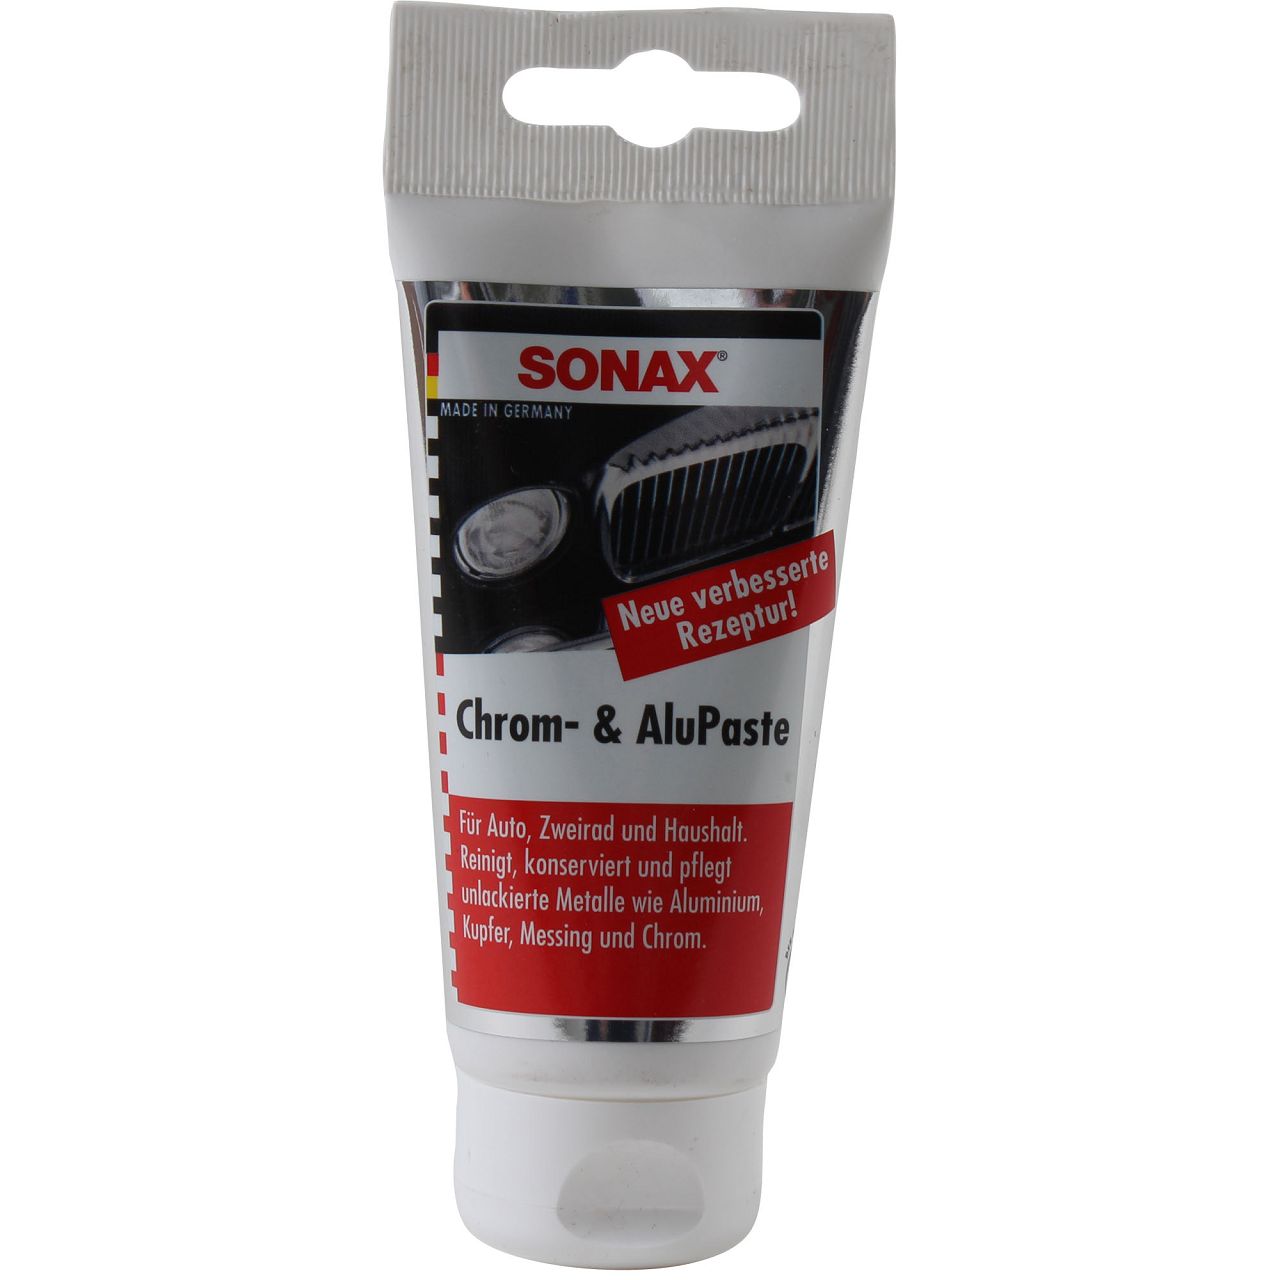 SONAX Chrom- & AluPaste Chrompaste Alu-Paste Chrom-Paste 75ml 308000